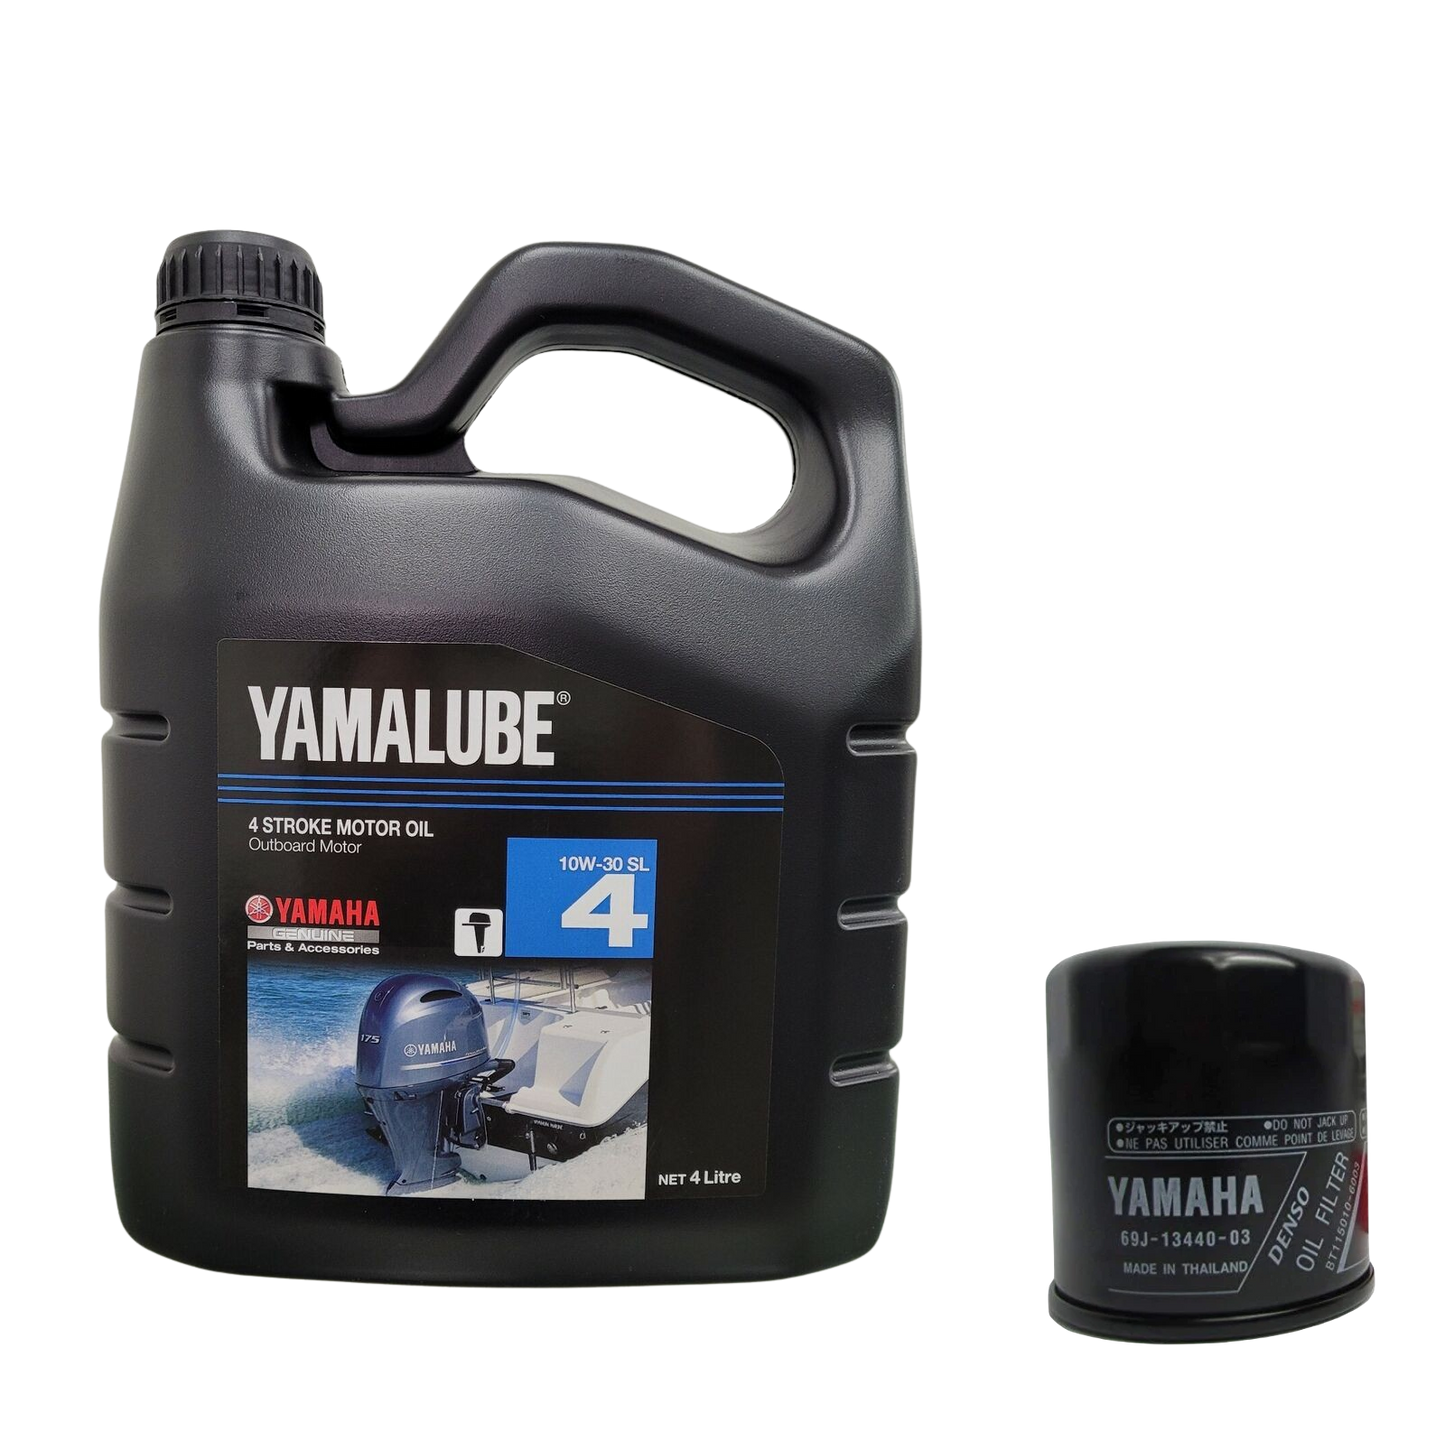 Yamaha Oil Change Kit for Yamaha 1.8L